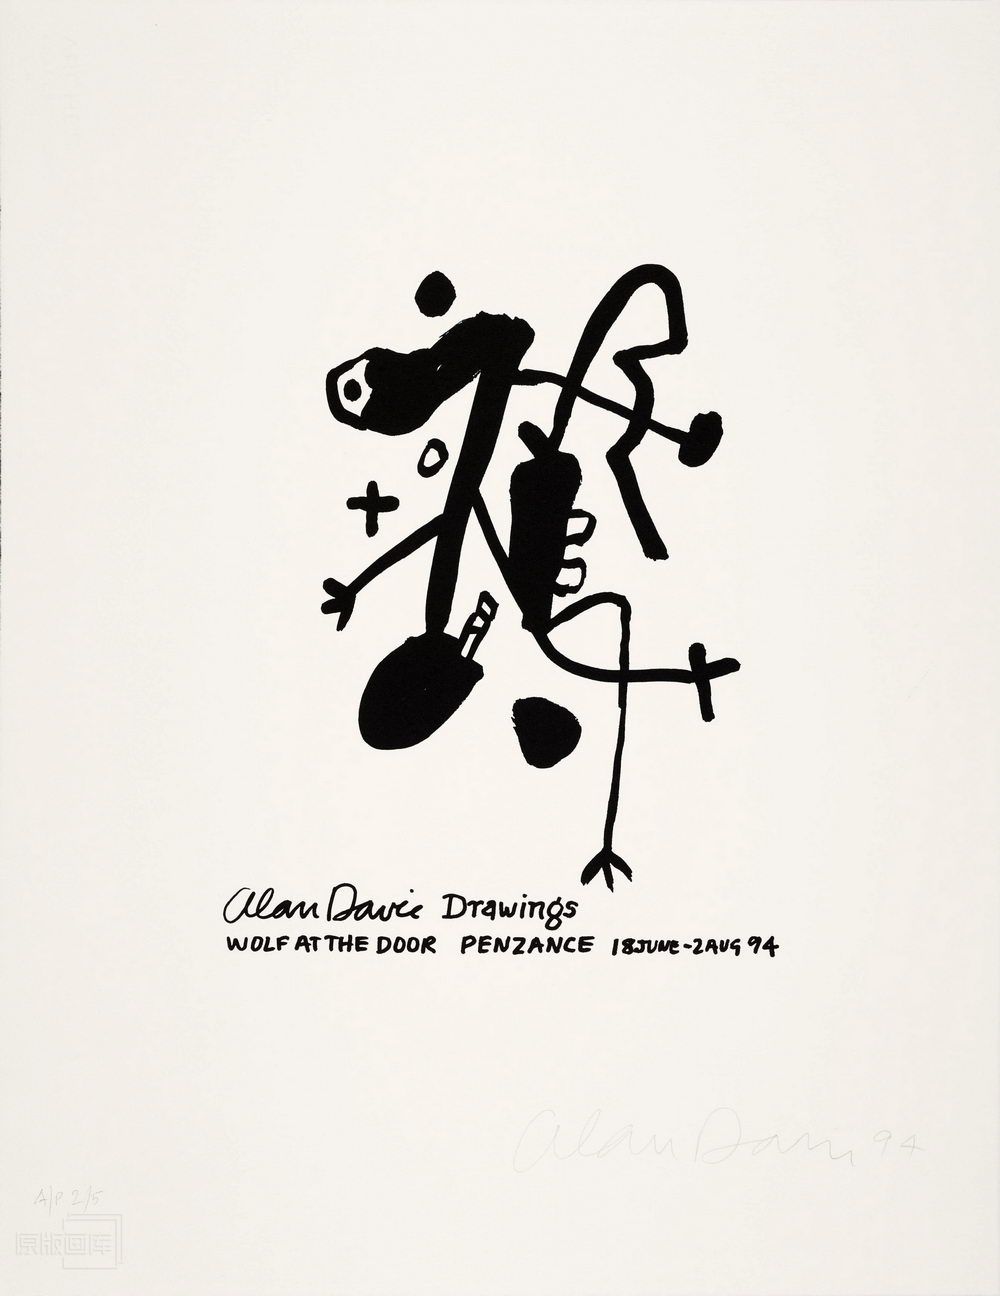 原版画库-186535-Poster for the exhibition  Alan Davie Drawings  at the Wolf at the Door Gallery Penzance 18 June - 2 August 1994_Alan Davie